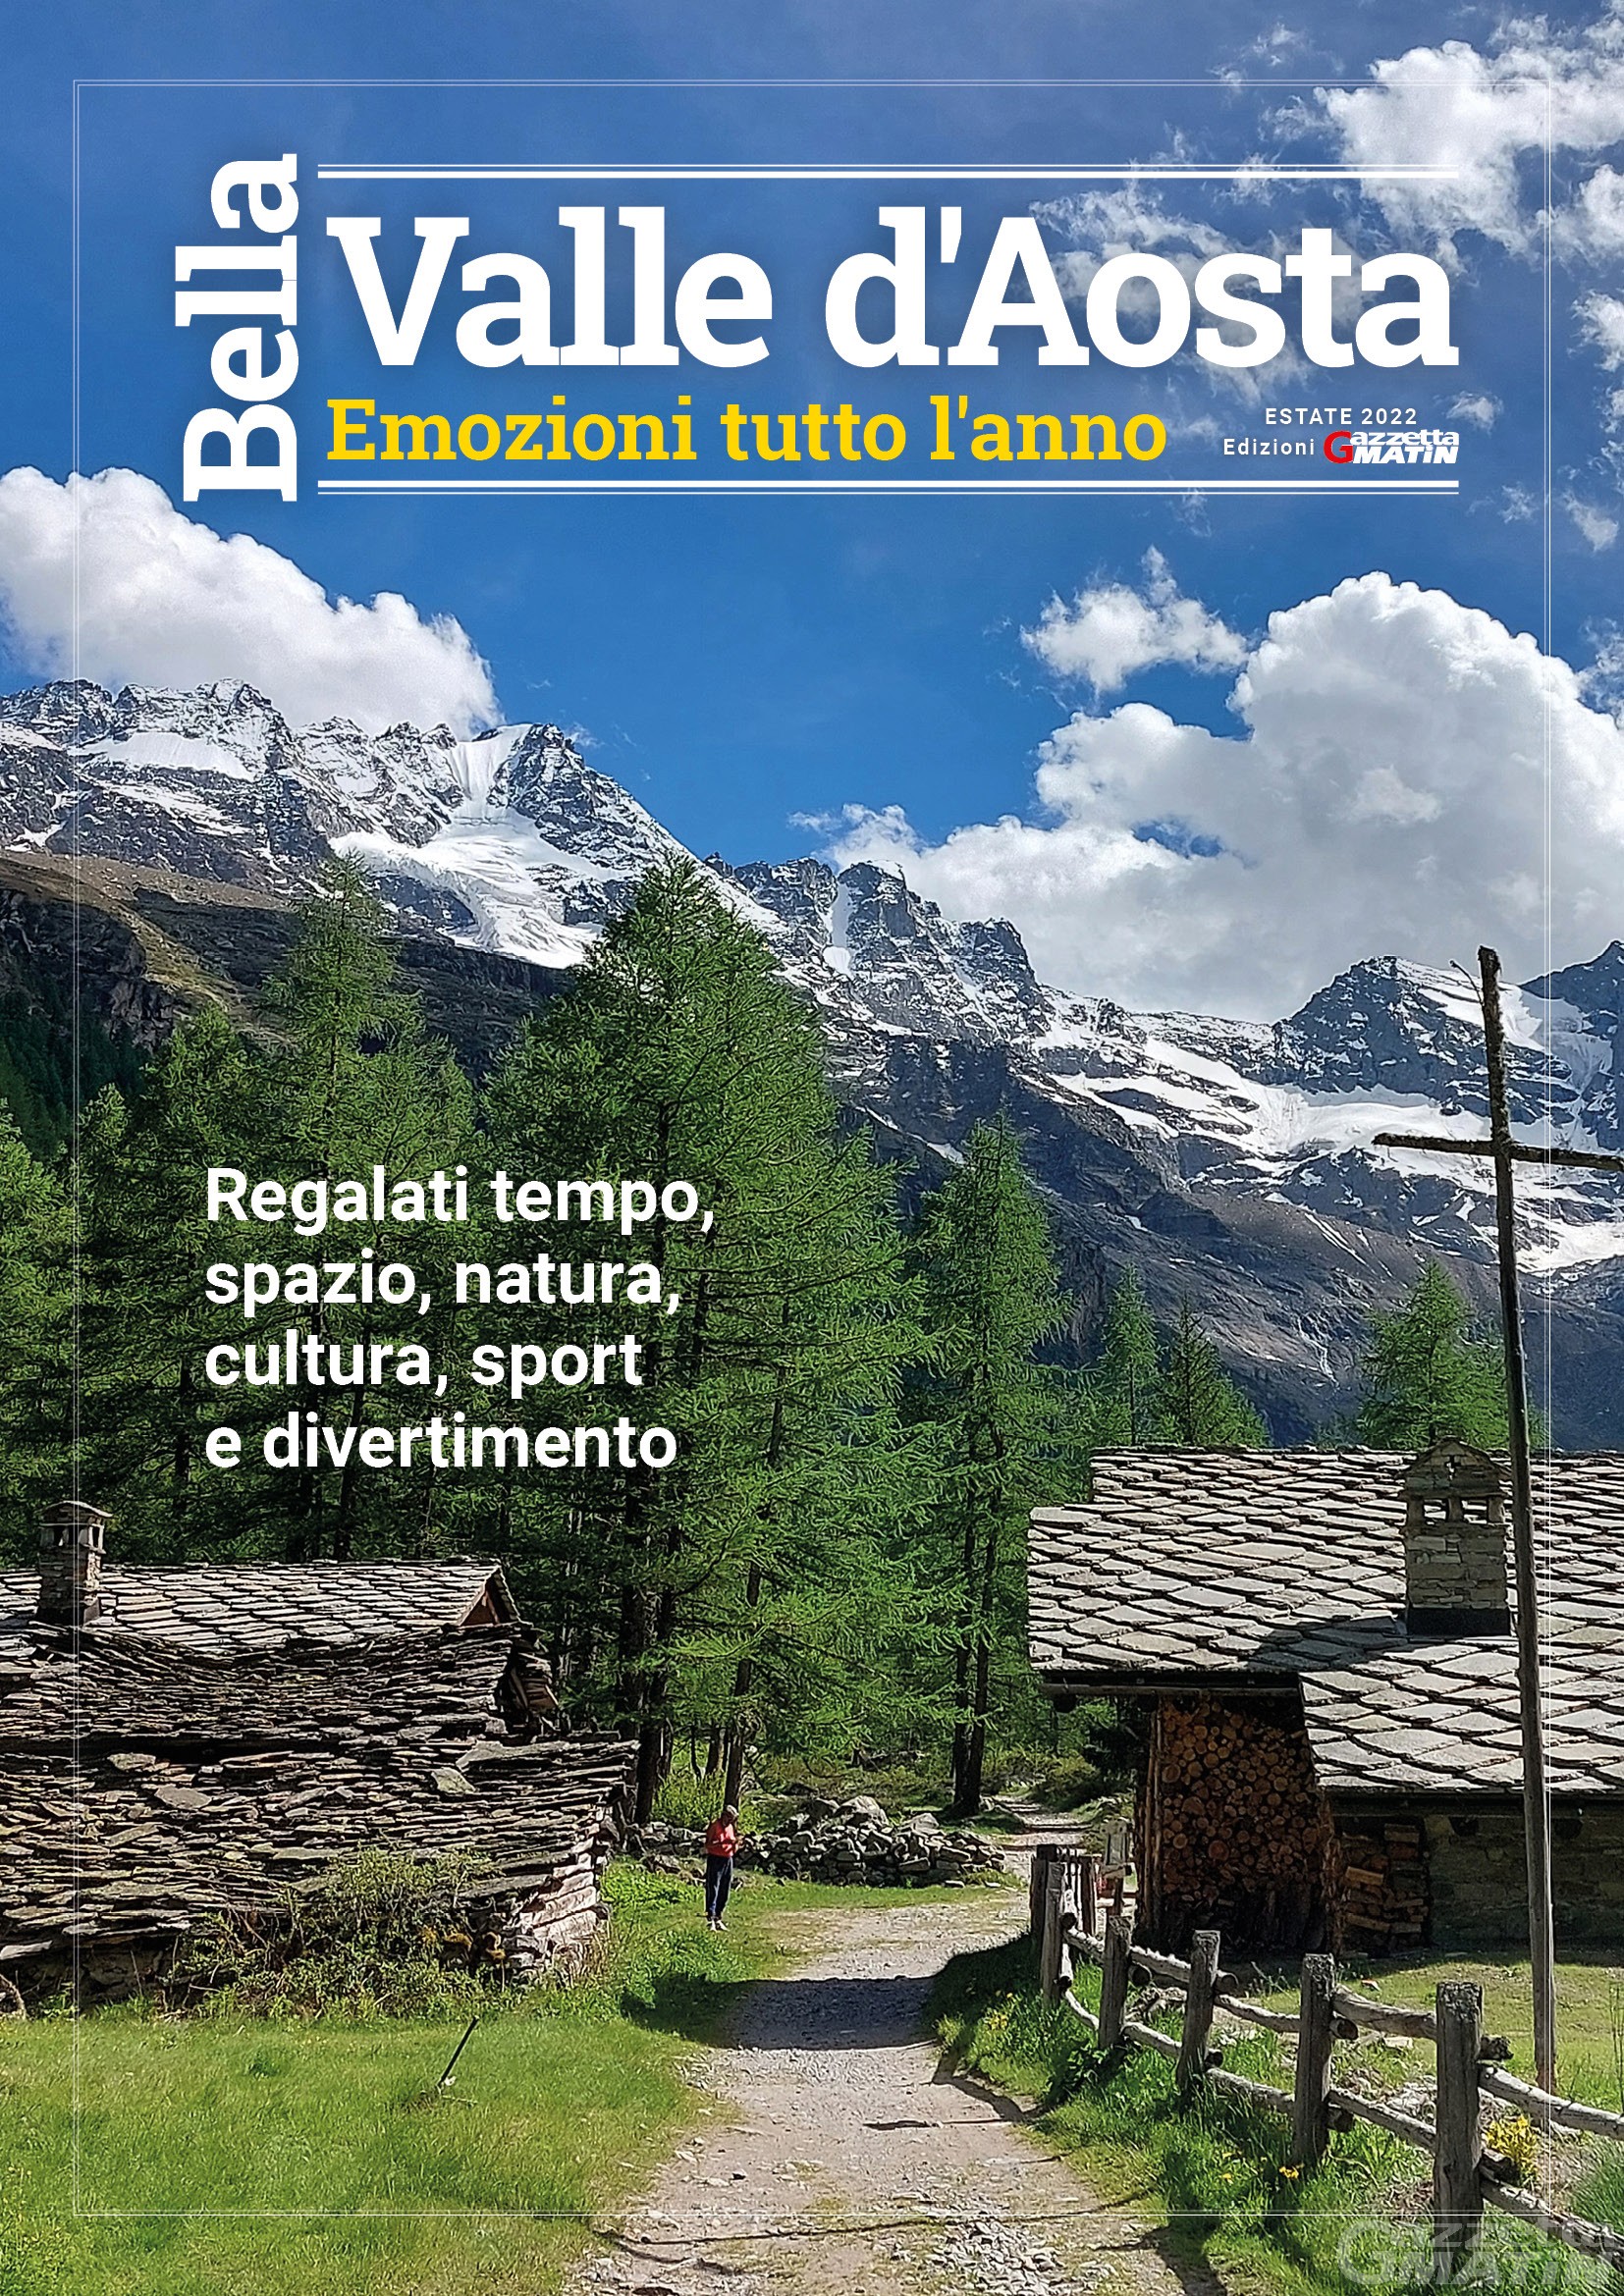 Novità: ecco Bella Valle d’Aosta, il magazine dell’estate di Gazzetta Matin